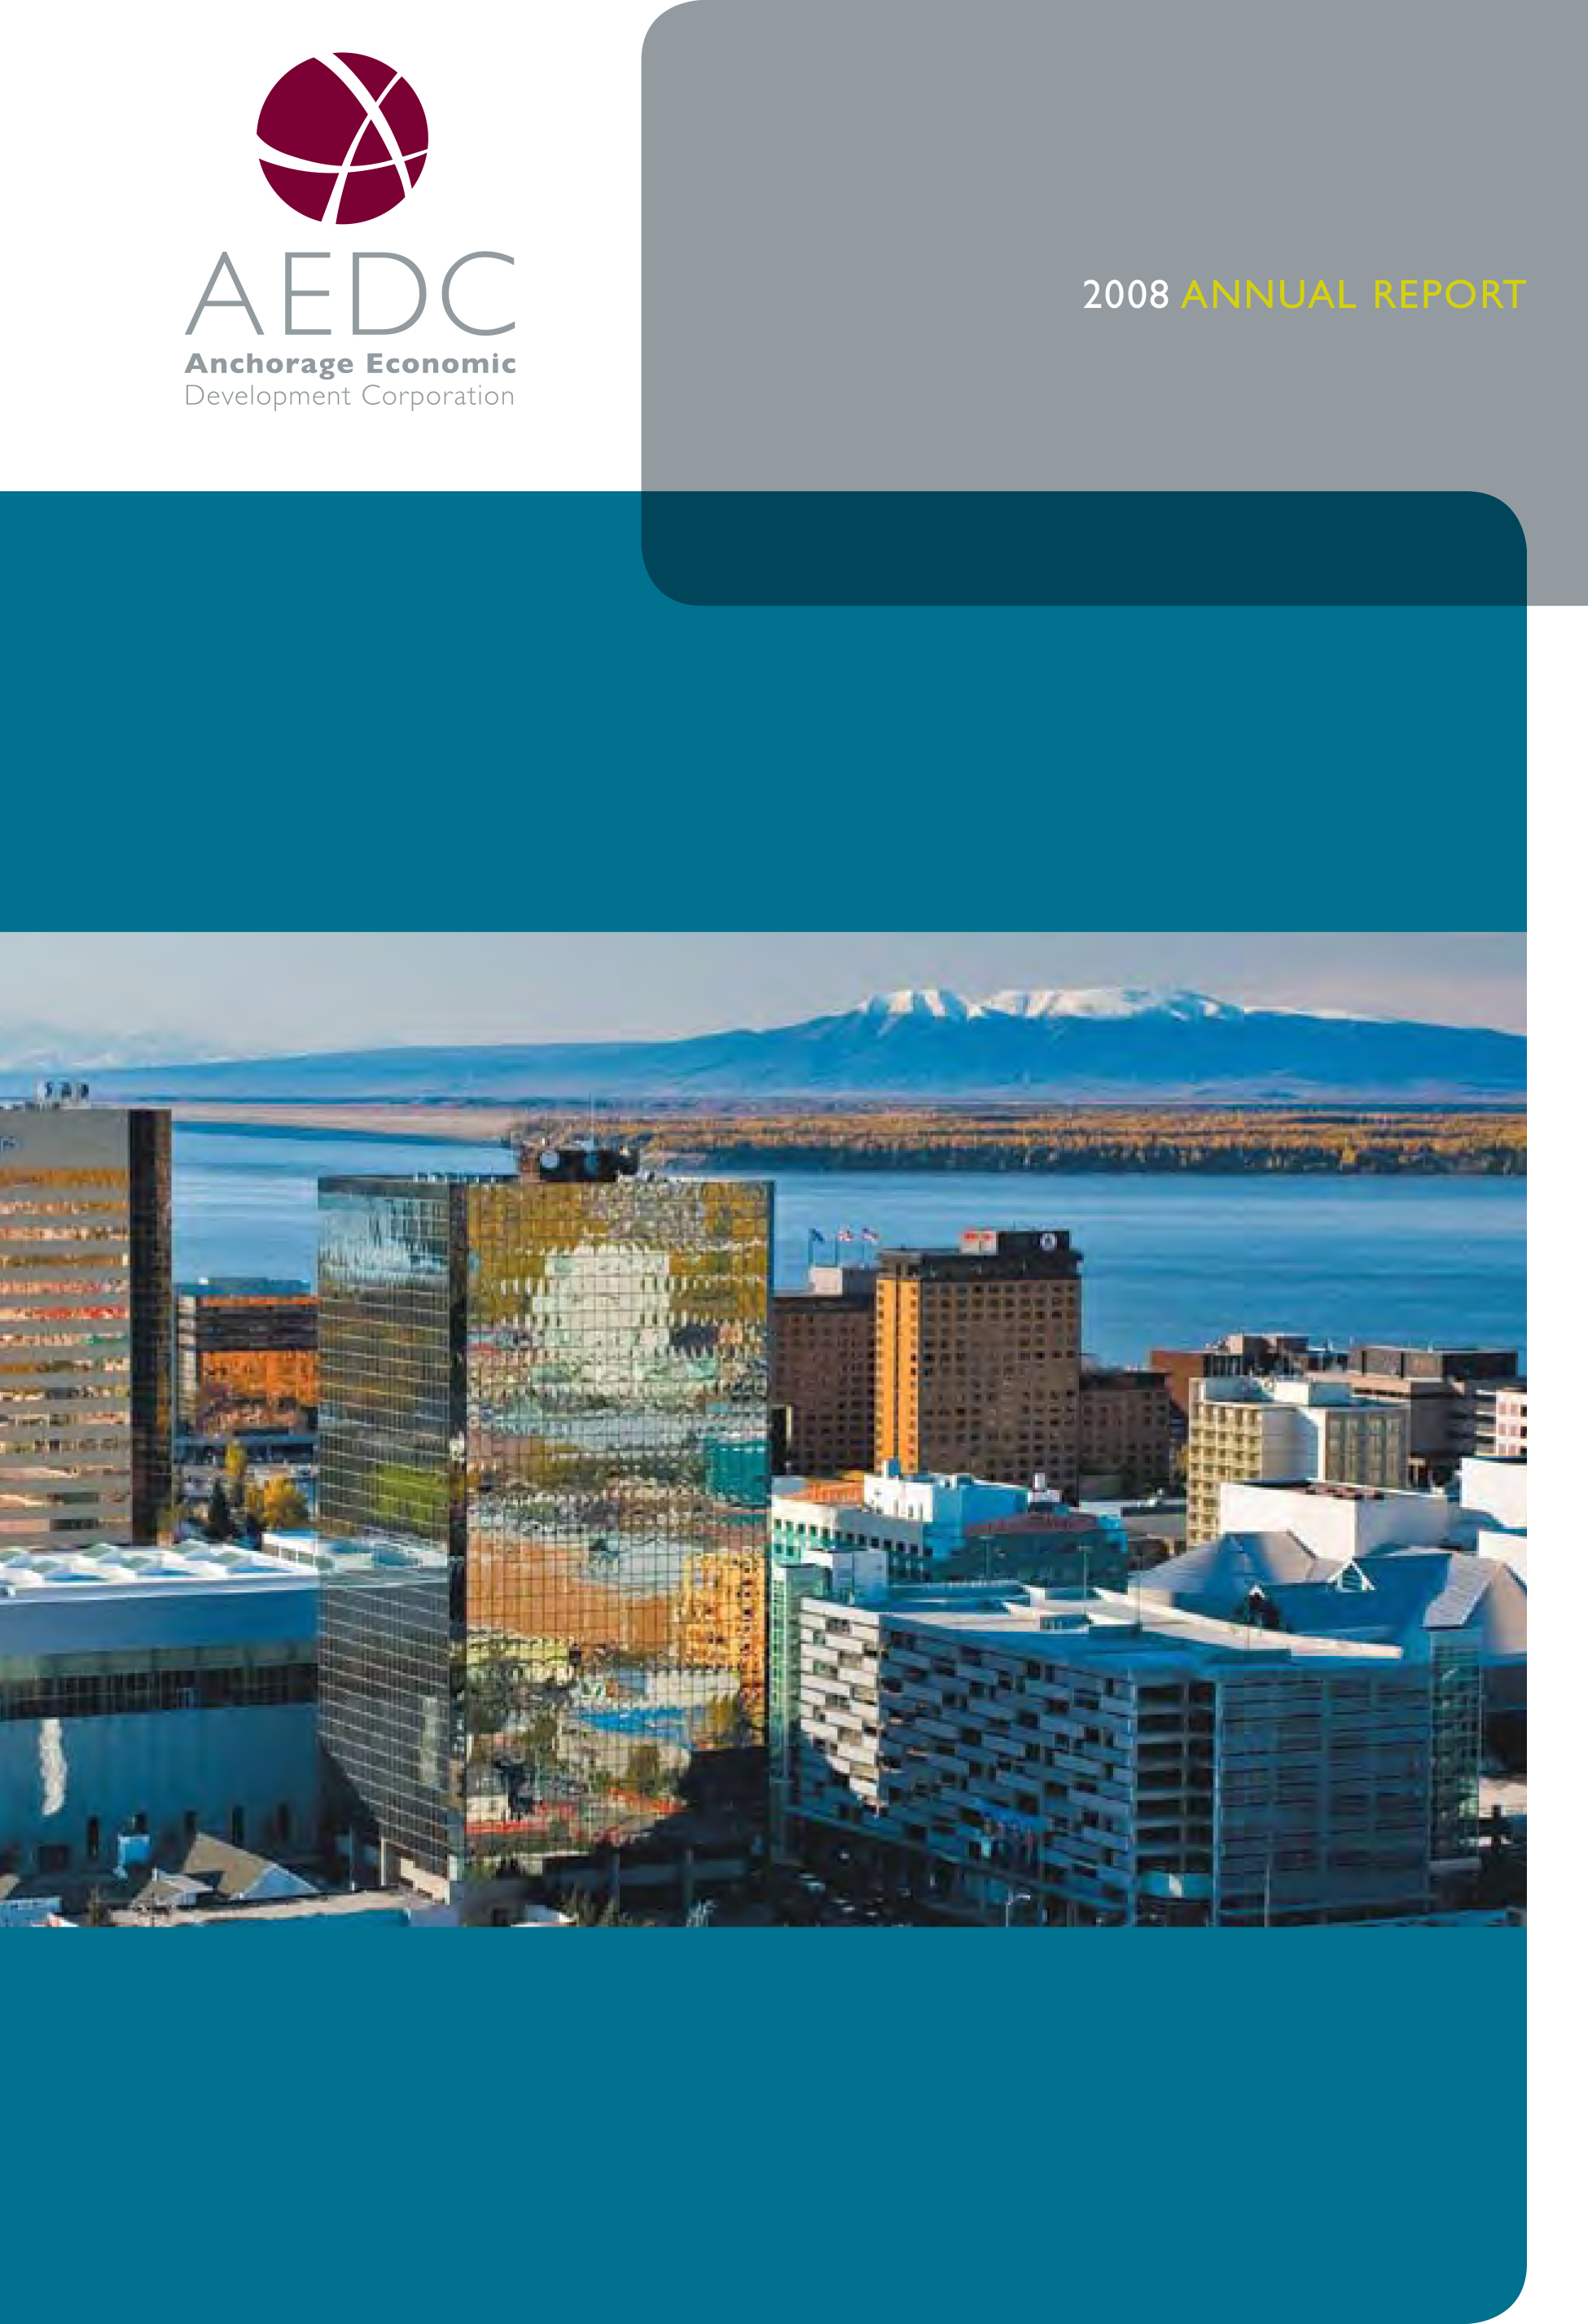 AEDC Annual Report: 2008